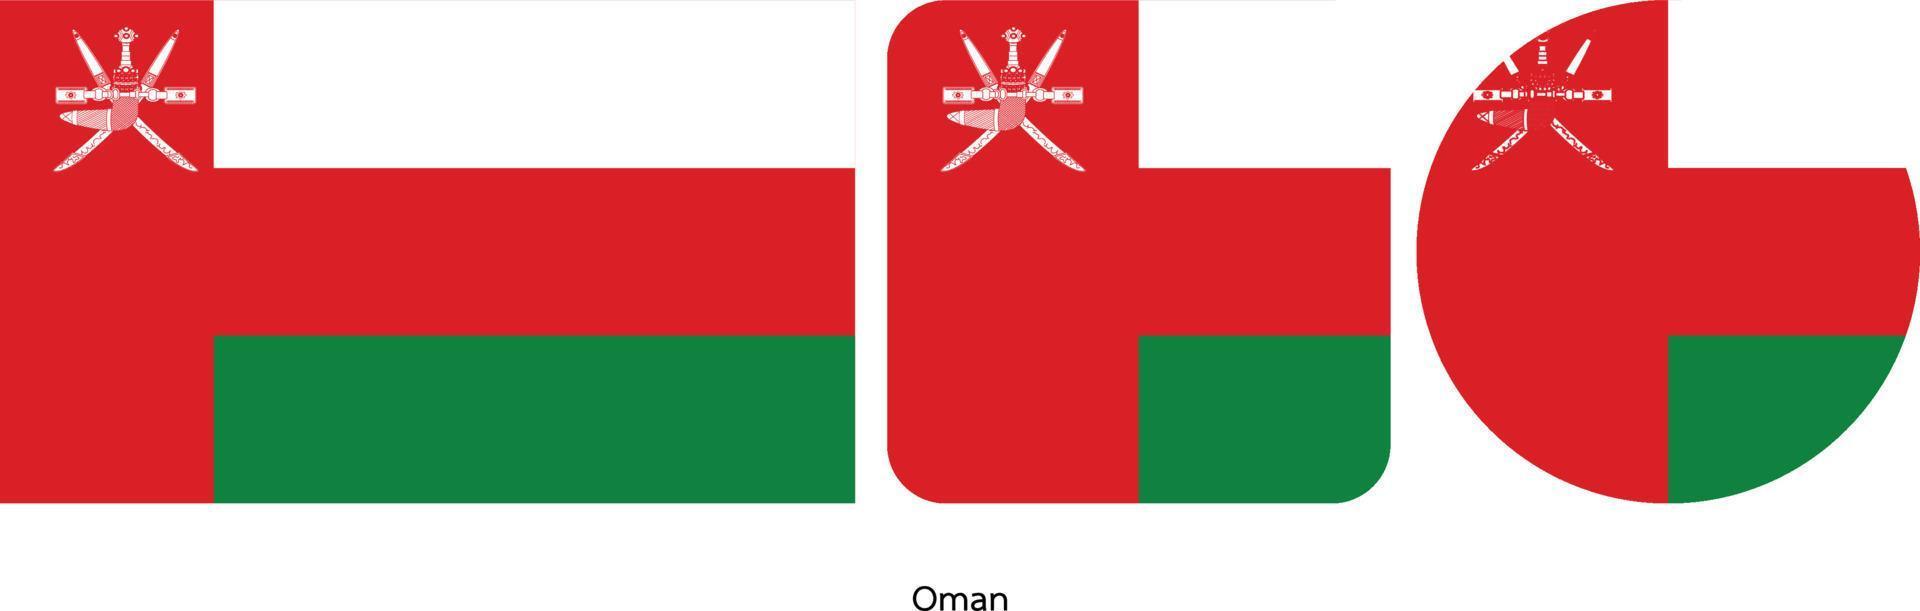 bandeira de omã, ilustração vetorial vetor